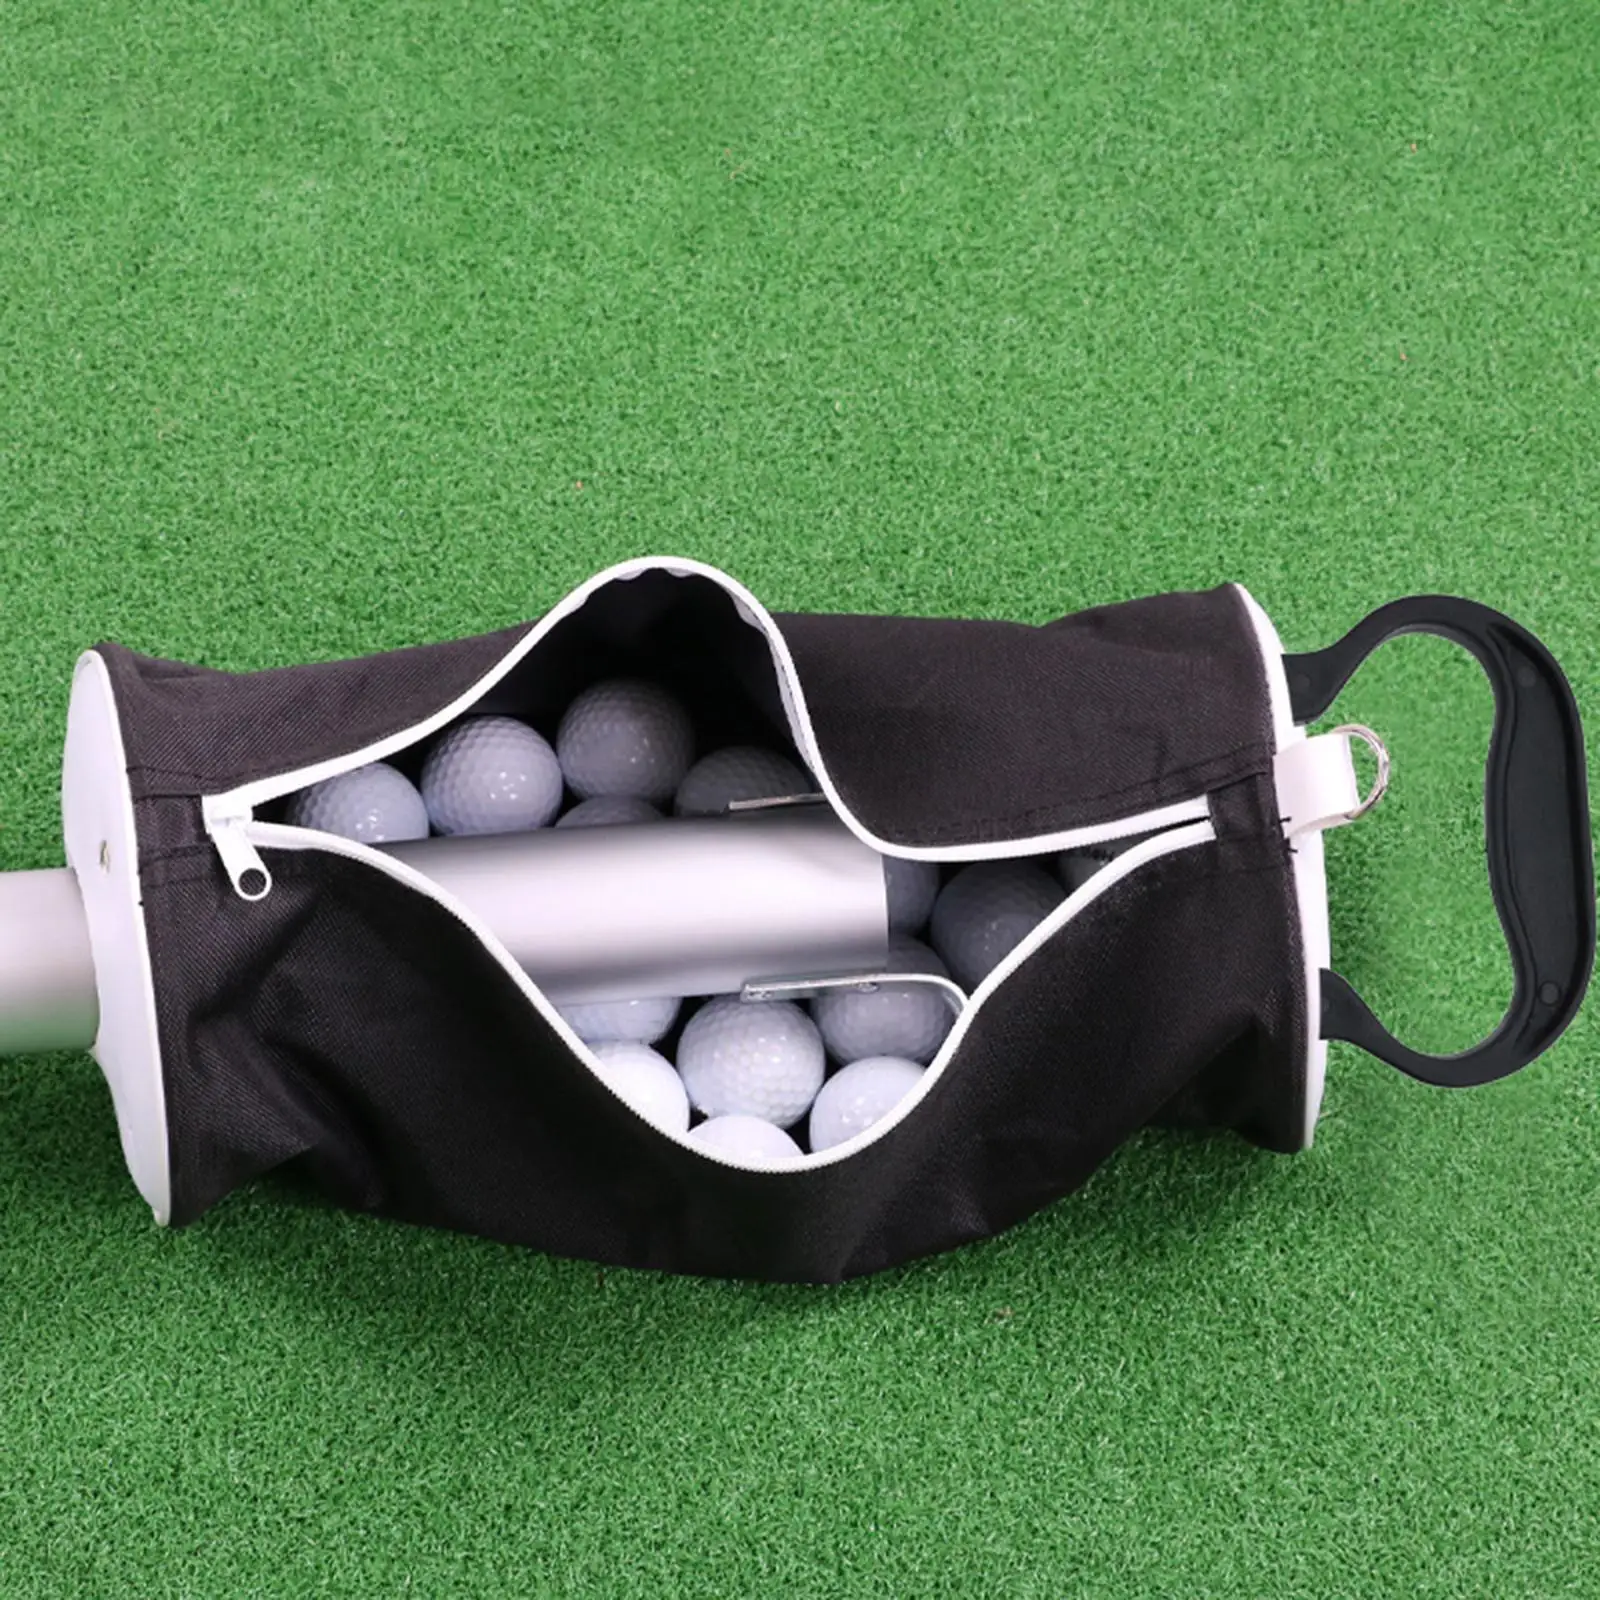 Golf Ball Retriever Aluminum for Putter Men Women Golf Ball Pick up Shag Bag